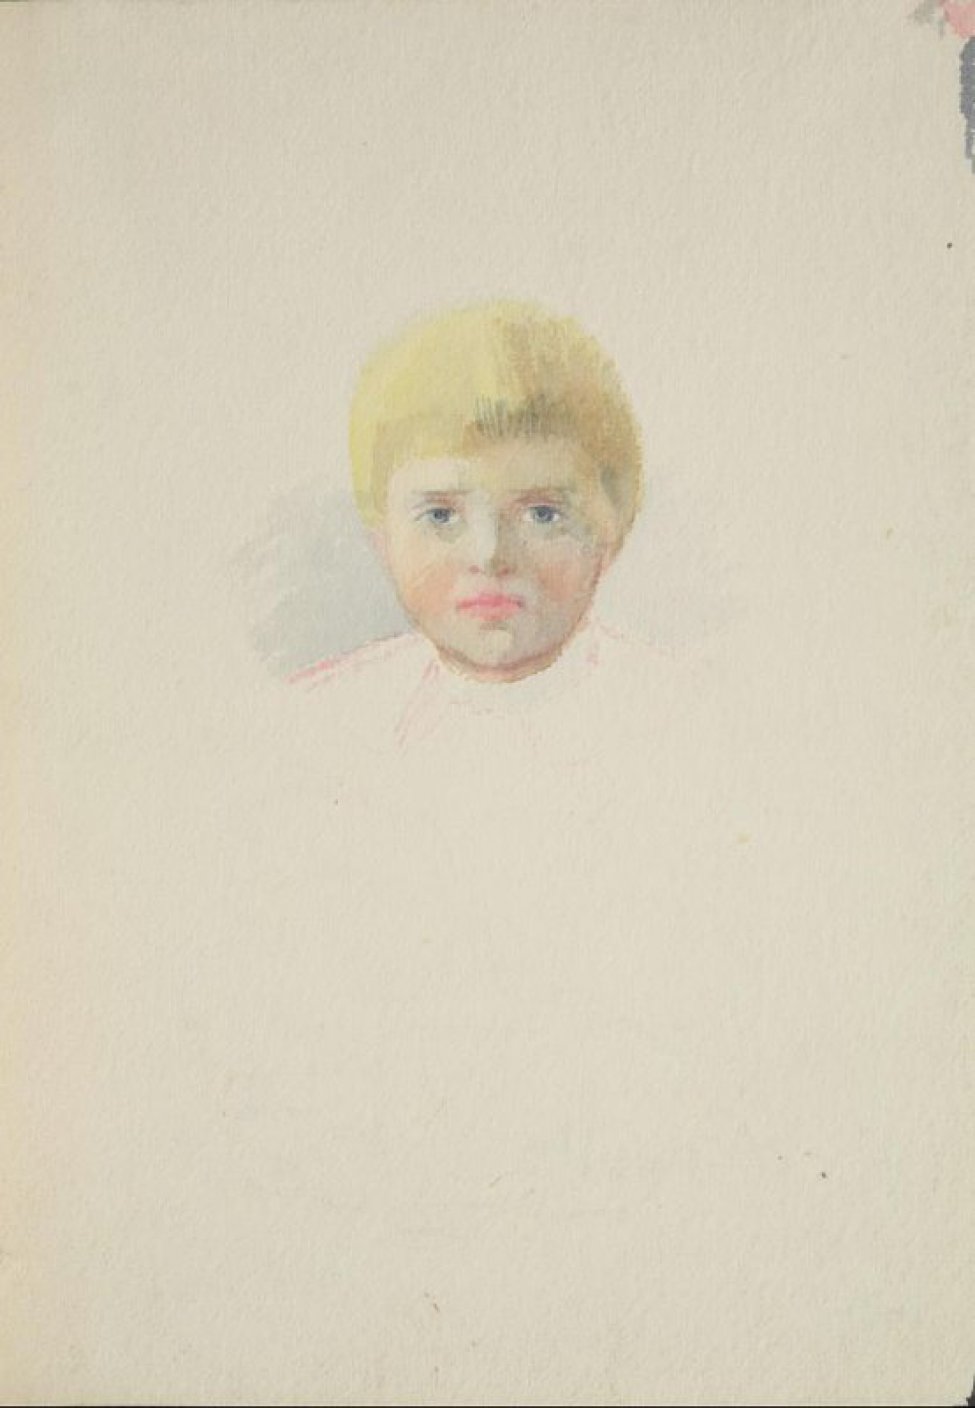 На нежно голубом фоне изображена голова мальчика в фас; волосы цвета соломы, глаза серые смотрят на зрителя.